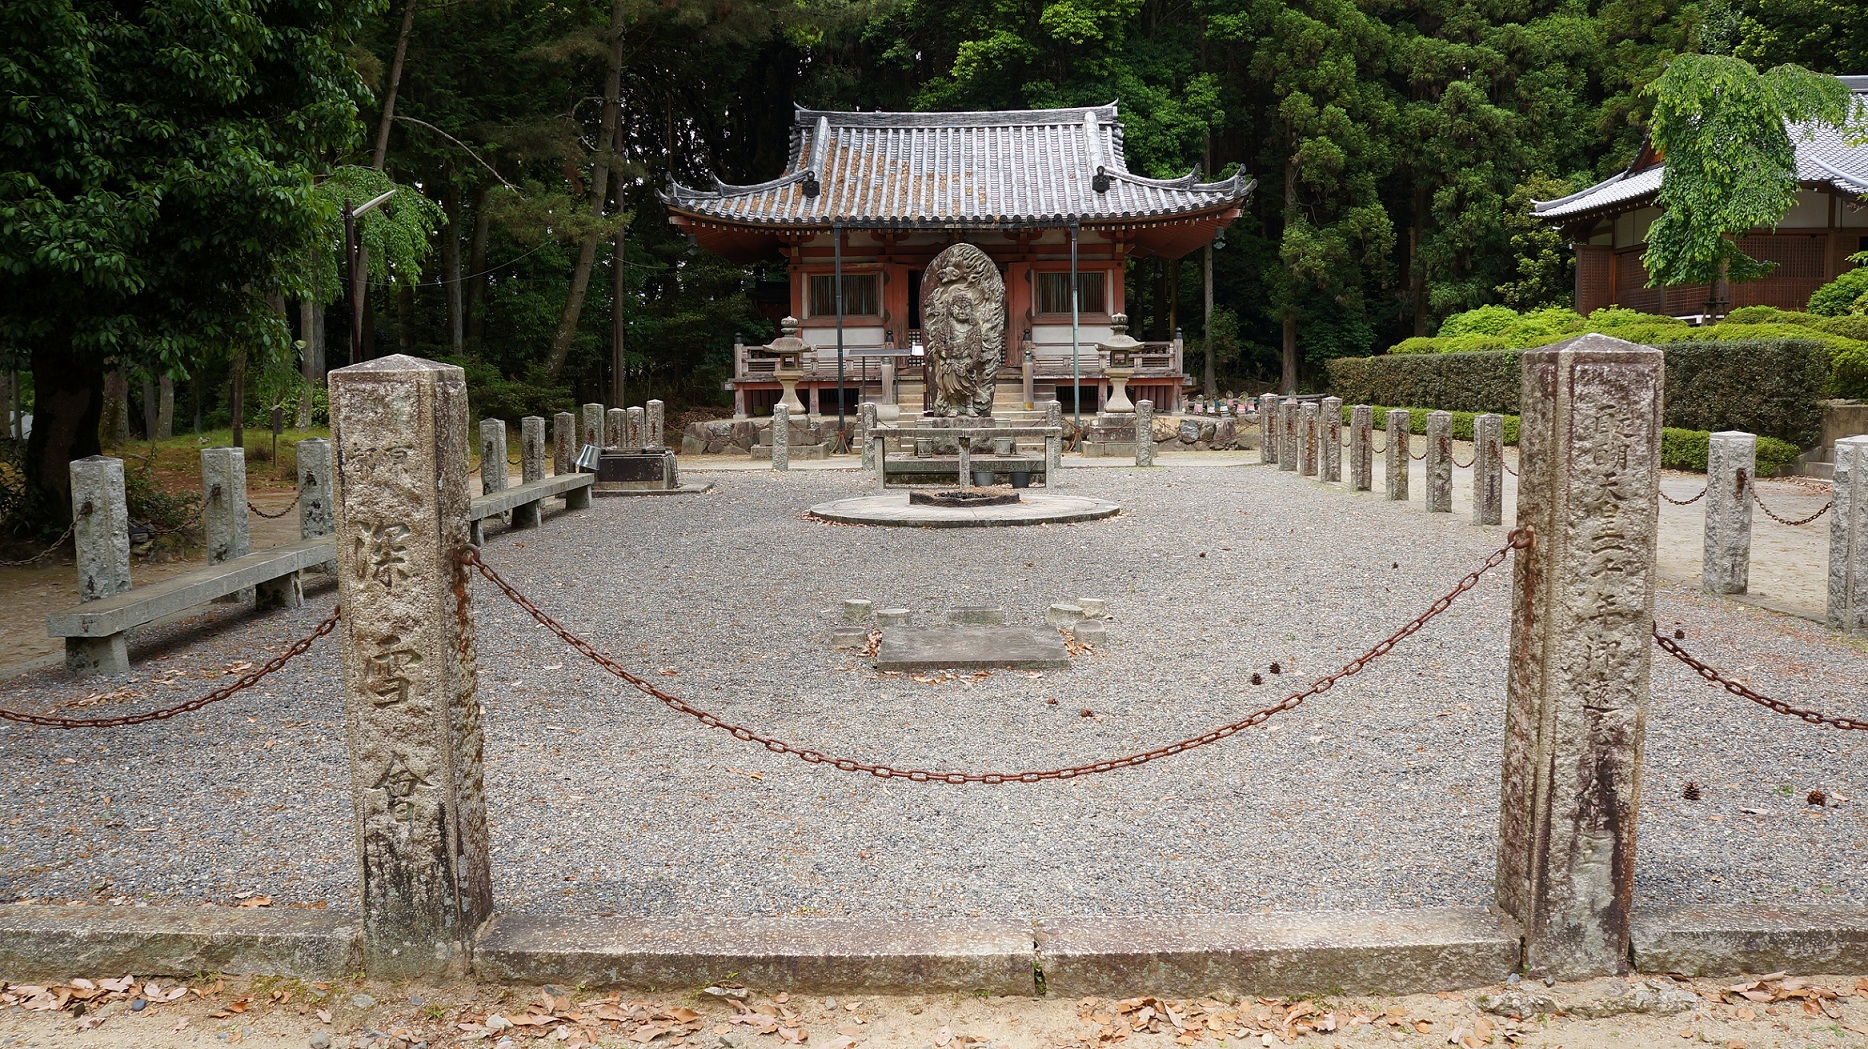 醍醐寺の不動堂